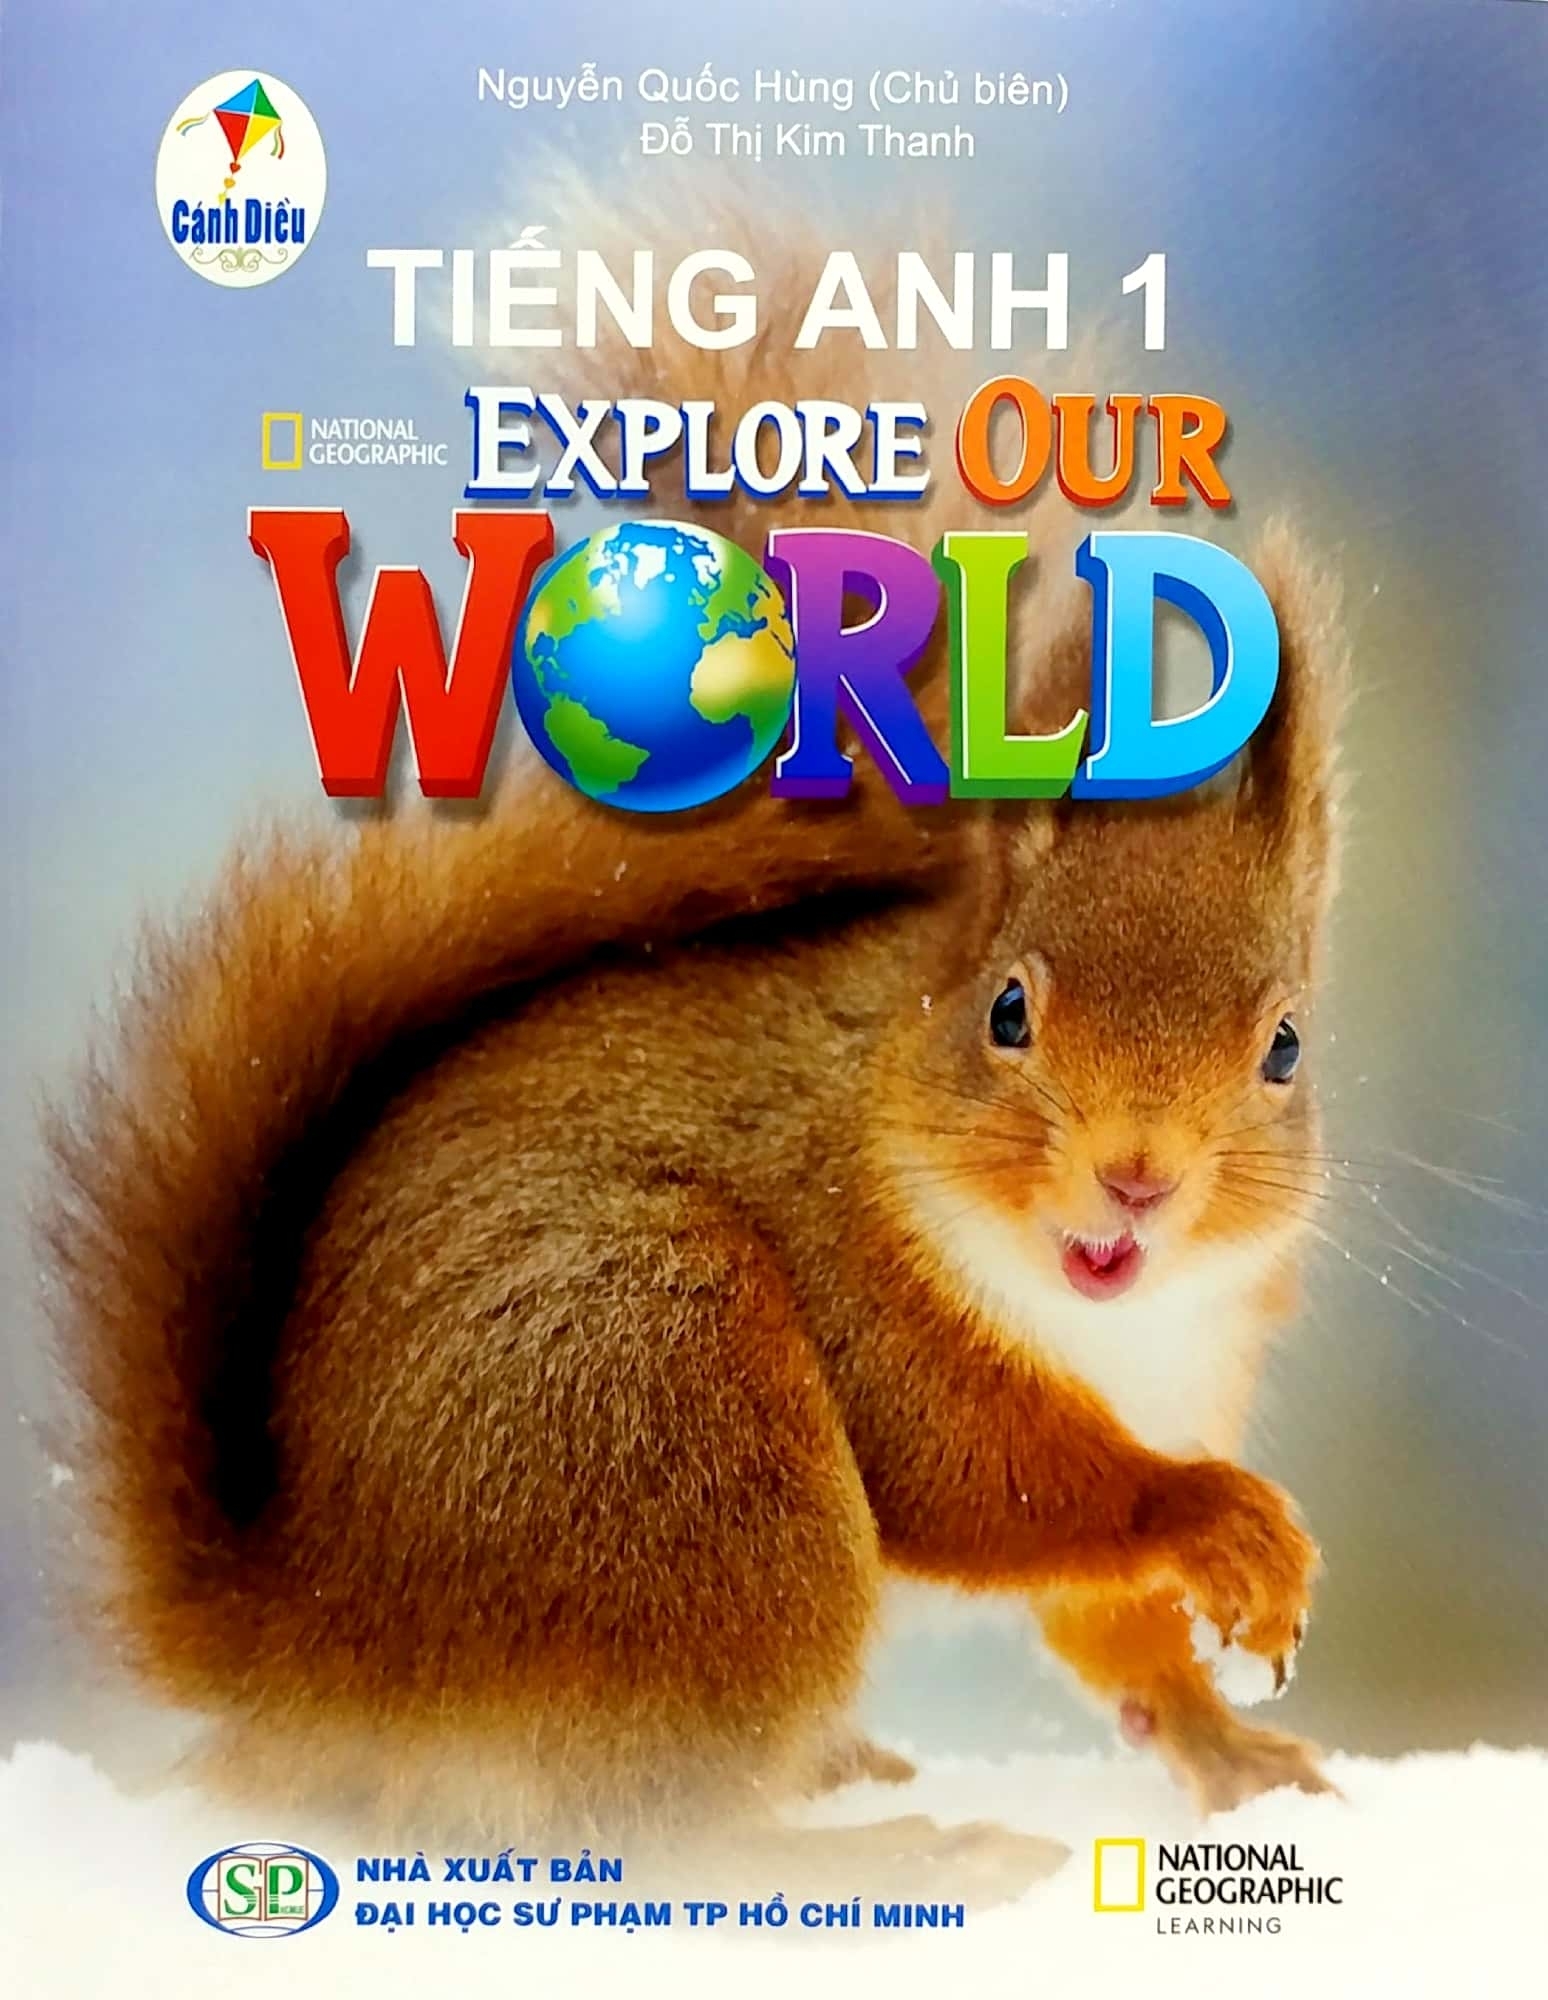 Explore Our World là một cuốn sách dạy tiếng Anh hấp dẫn dành cho trẻ em Tiểu học